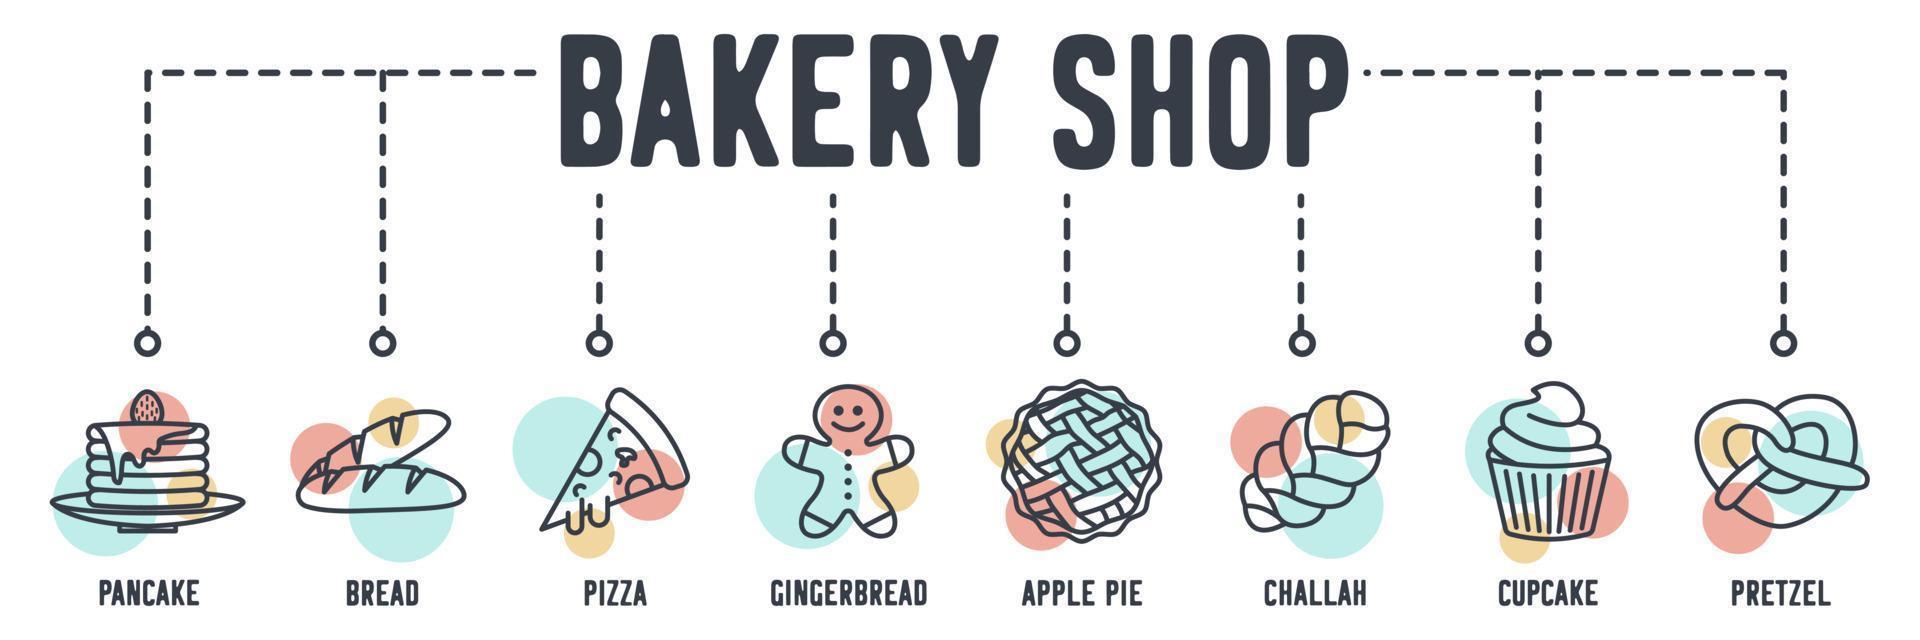 bakkerij winkel banner web pictogram. pannenkoek, brood, pizza, peperkoek, appeltaart, challah, cupcake, pretzel vector illustratie concept.